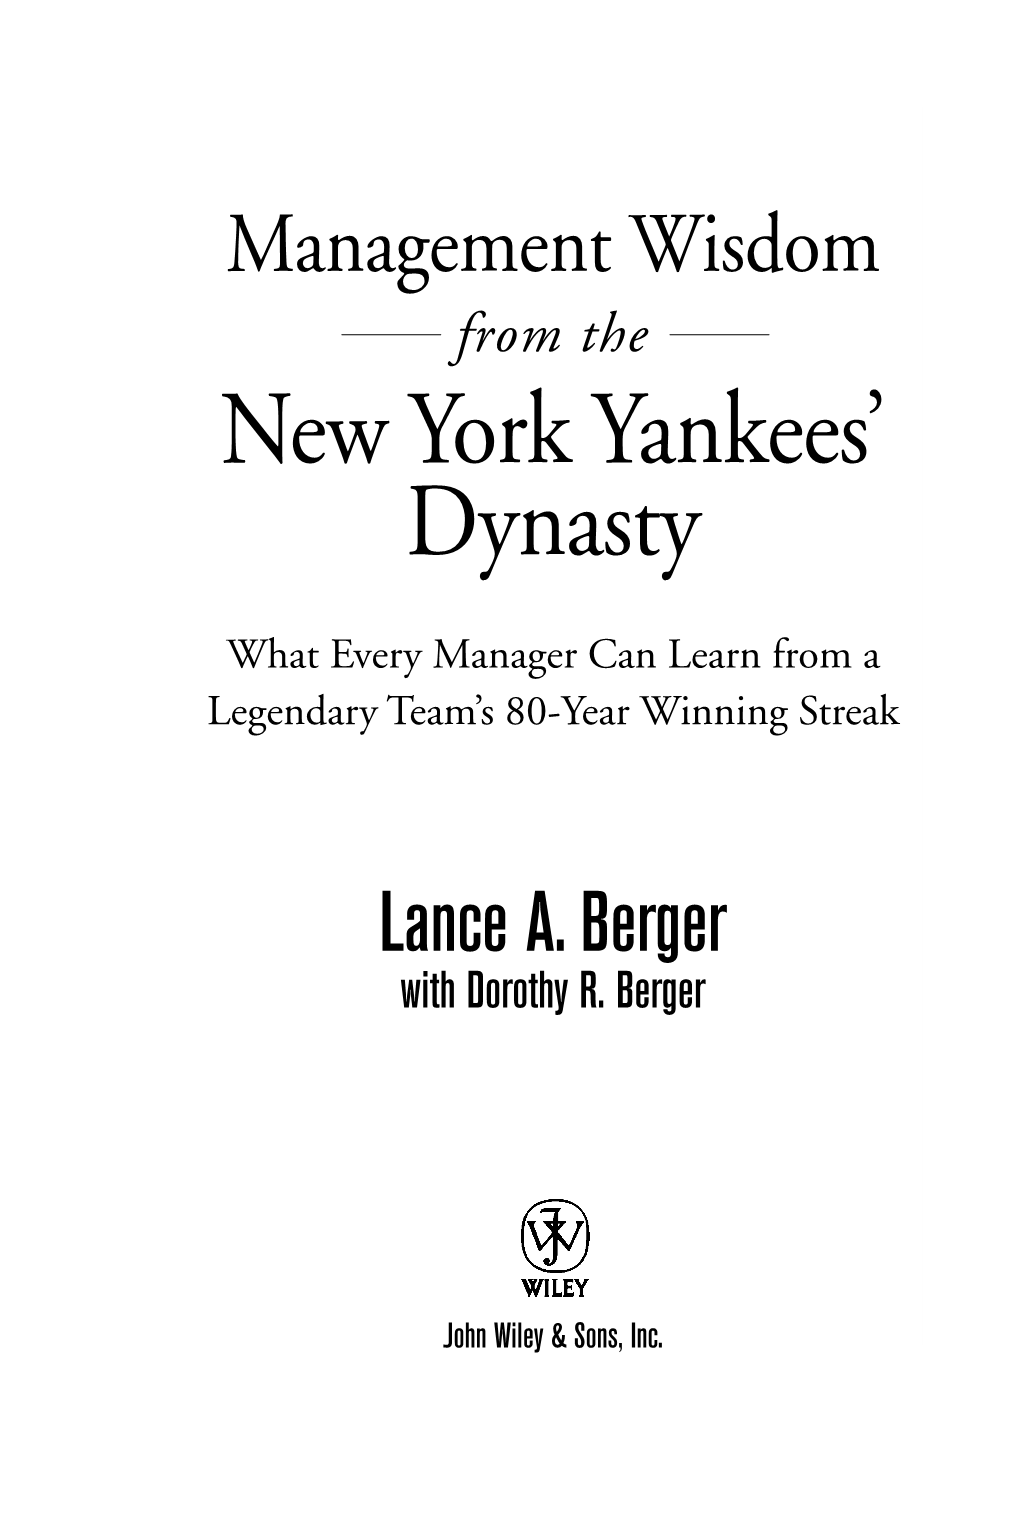 New York Yankees' Dynasty